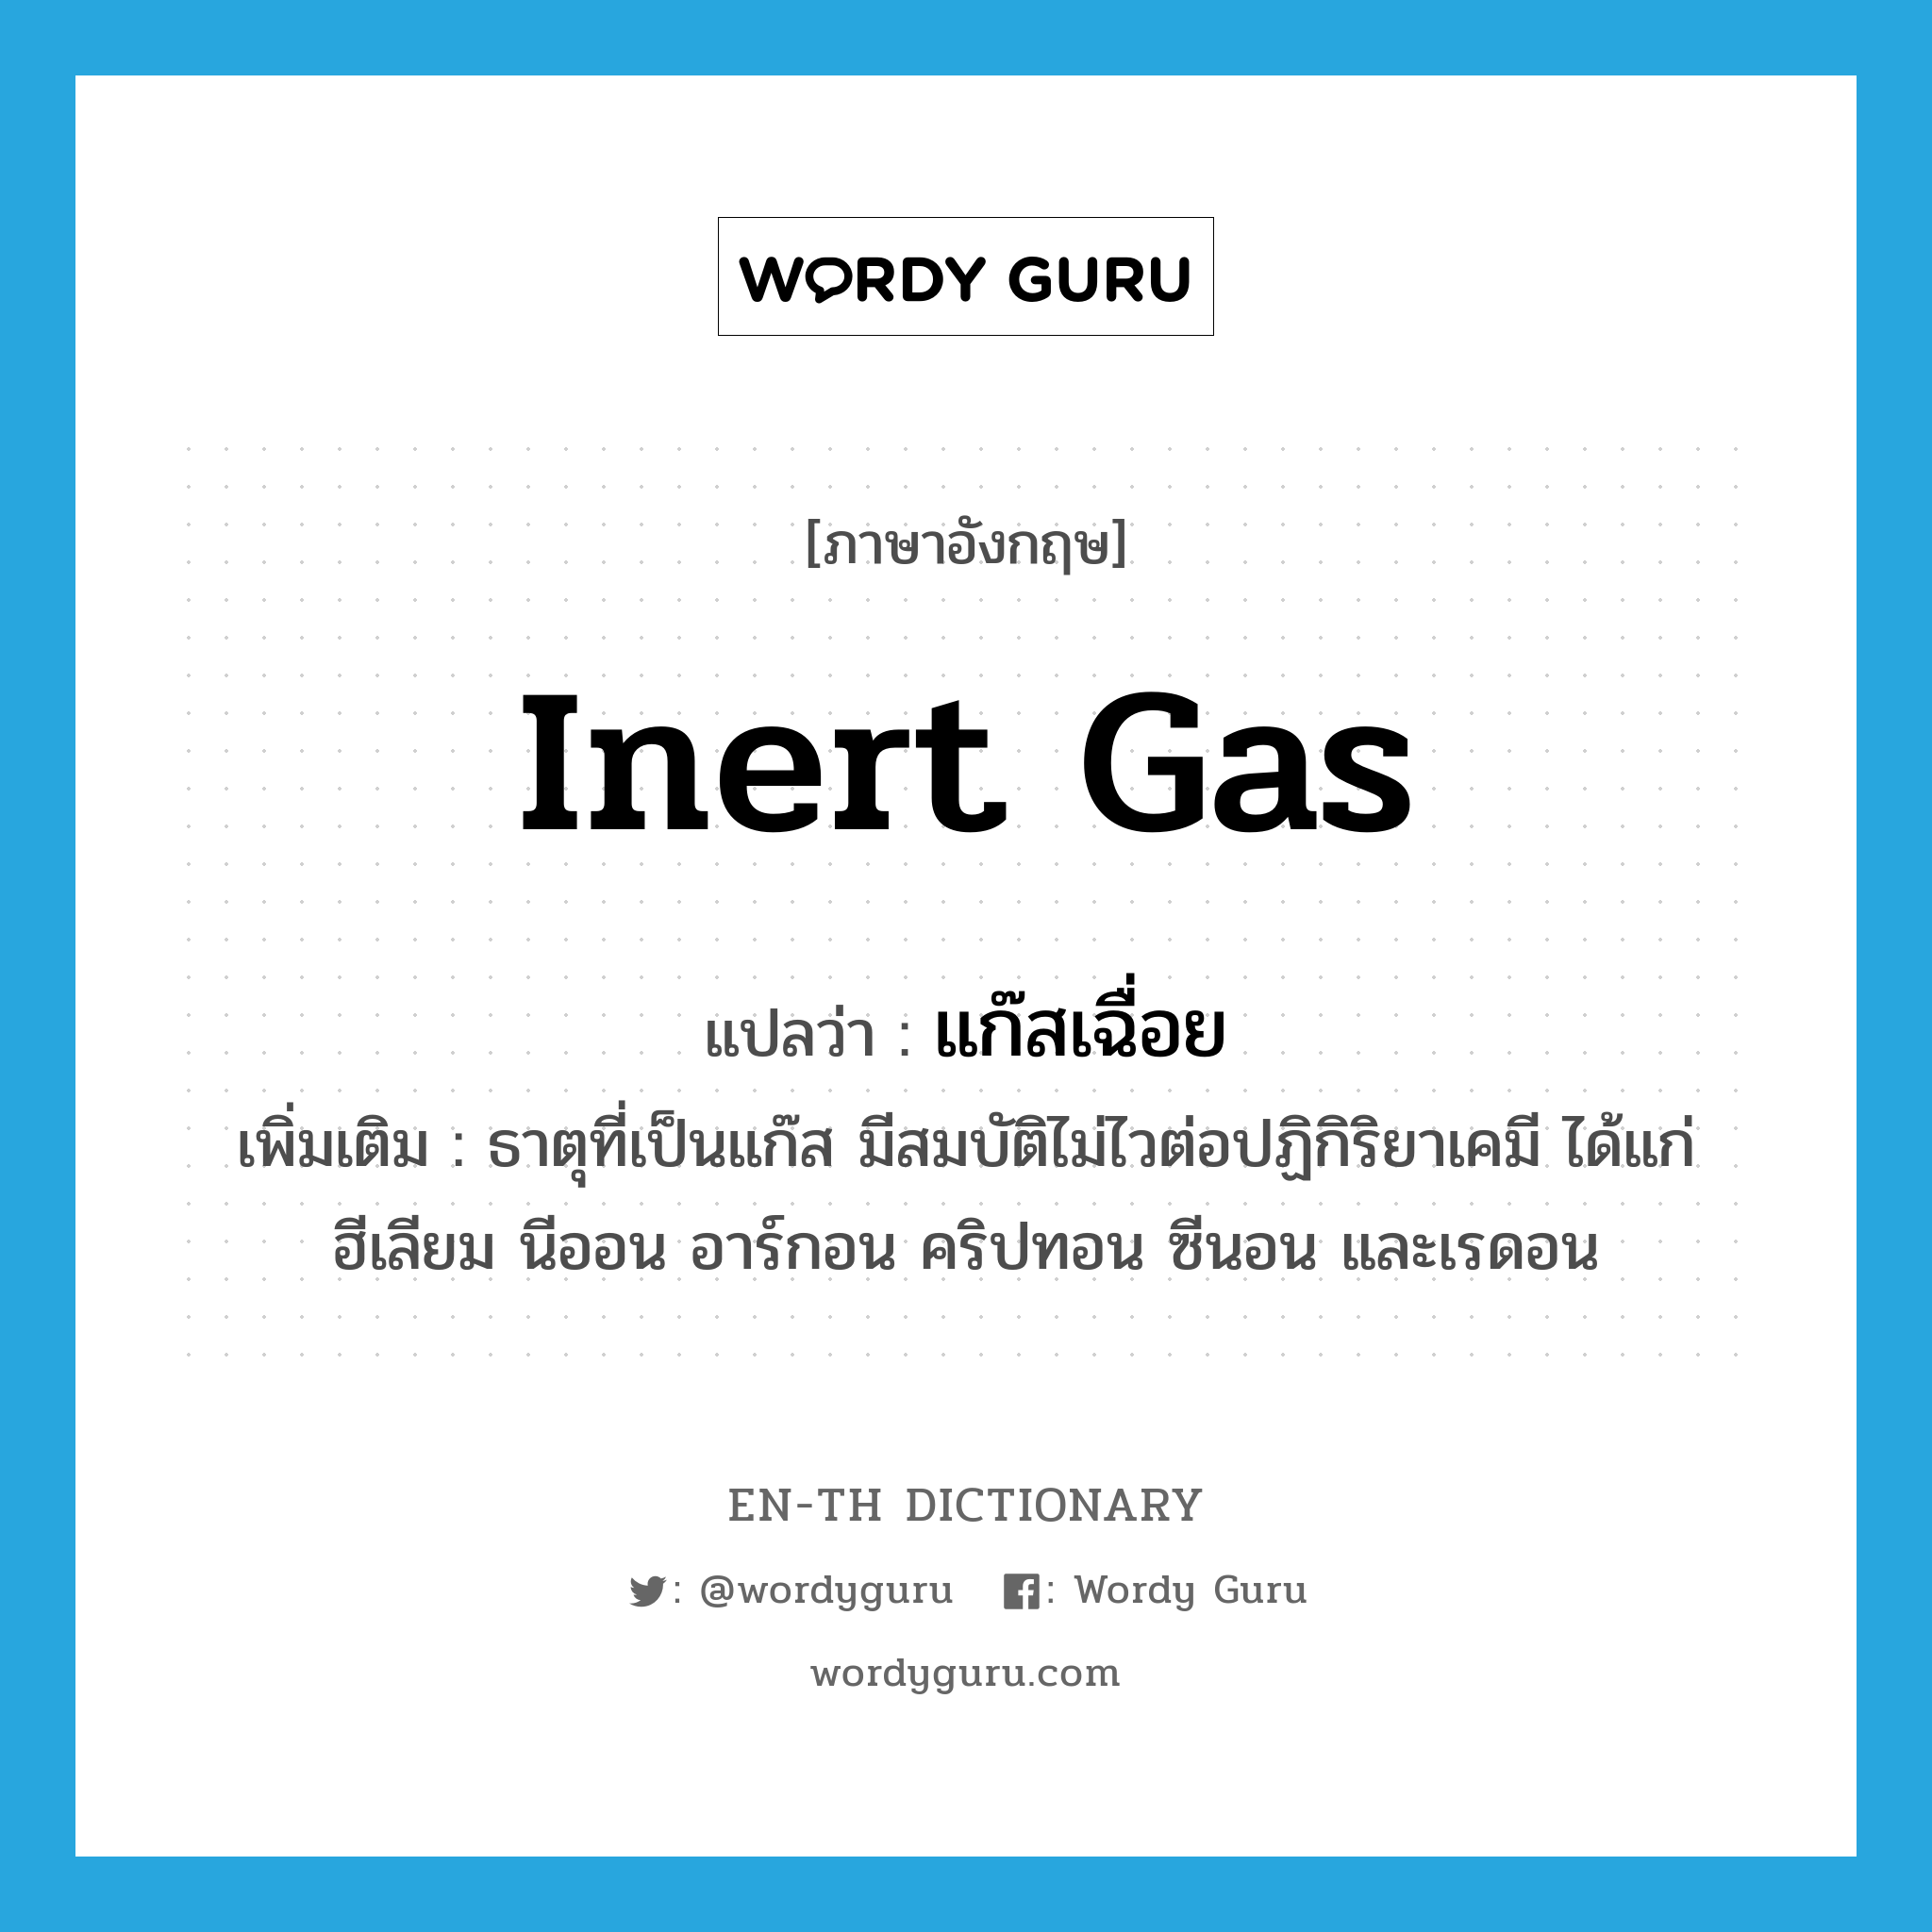 inert gas แปลว่า?, คำศัพท์ภาษาอังกฤษ inert gas แปลว่า แก๊สเฉื่อย ประเภท N เพิ่มเติม ธาตุที่เป็นแก๊ส มีสมบัติไม่ไวต่อปฏิกิริยาเคมี ได้แก่ ฮีเลียม นีออน อาร์กอน คริปทอน ซีนอน และเรดอน หมวด N